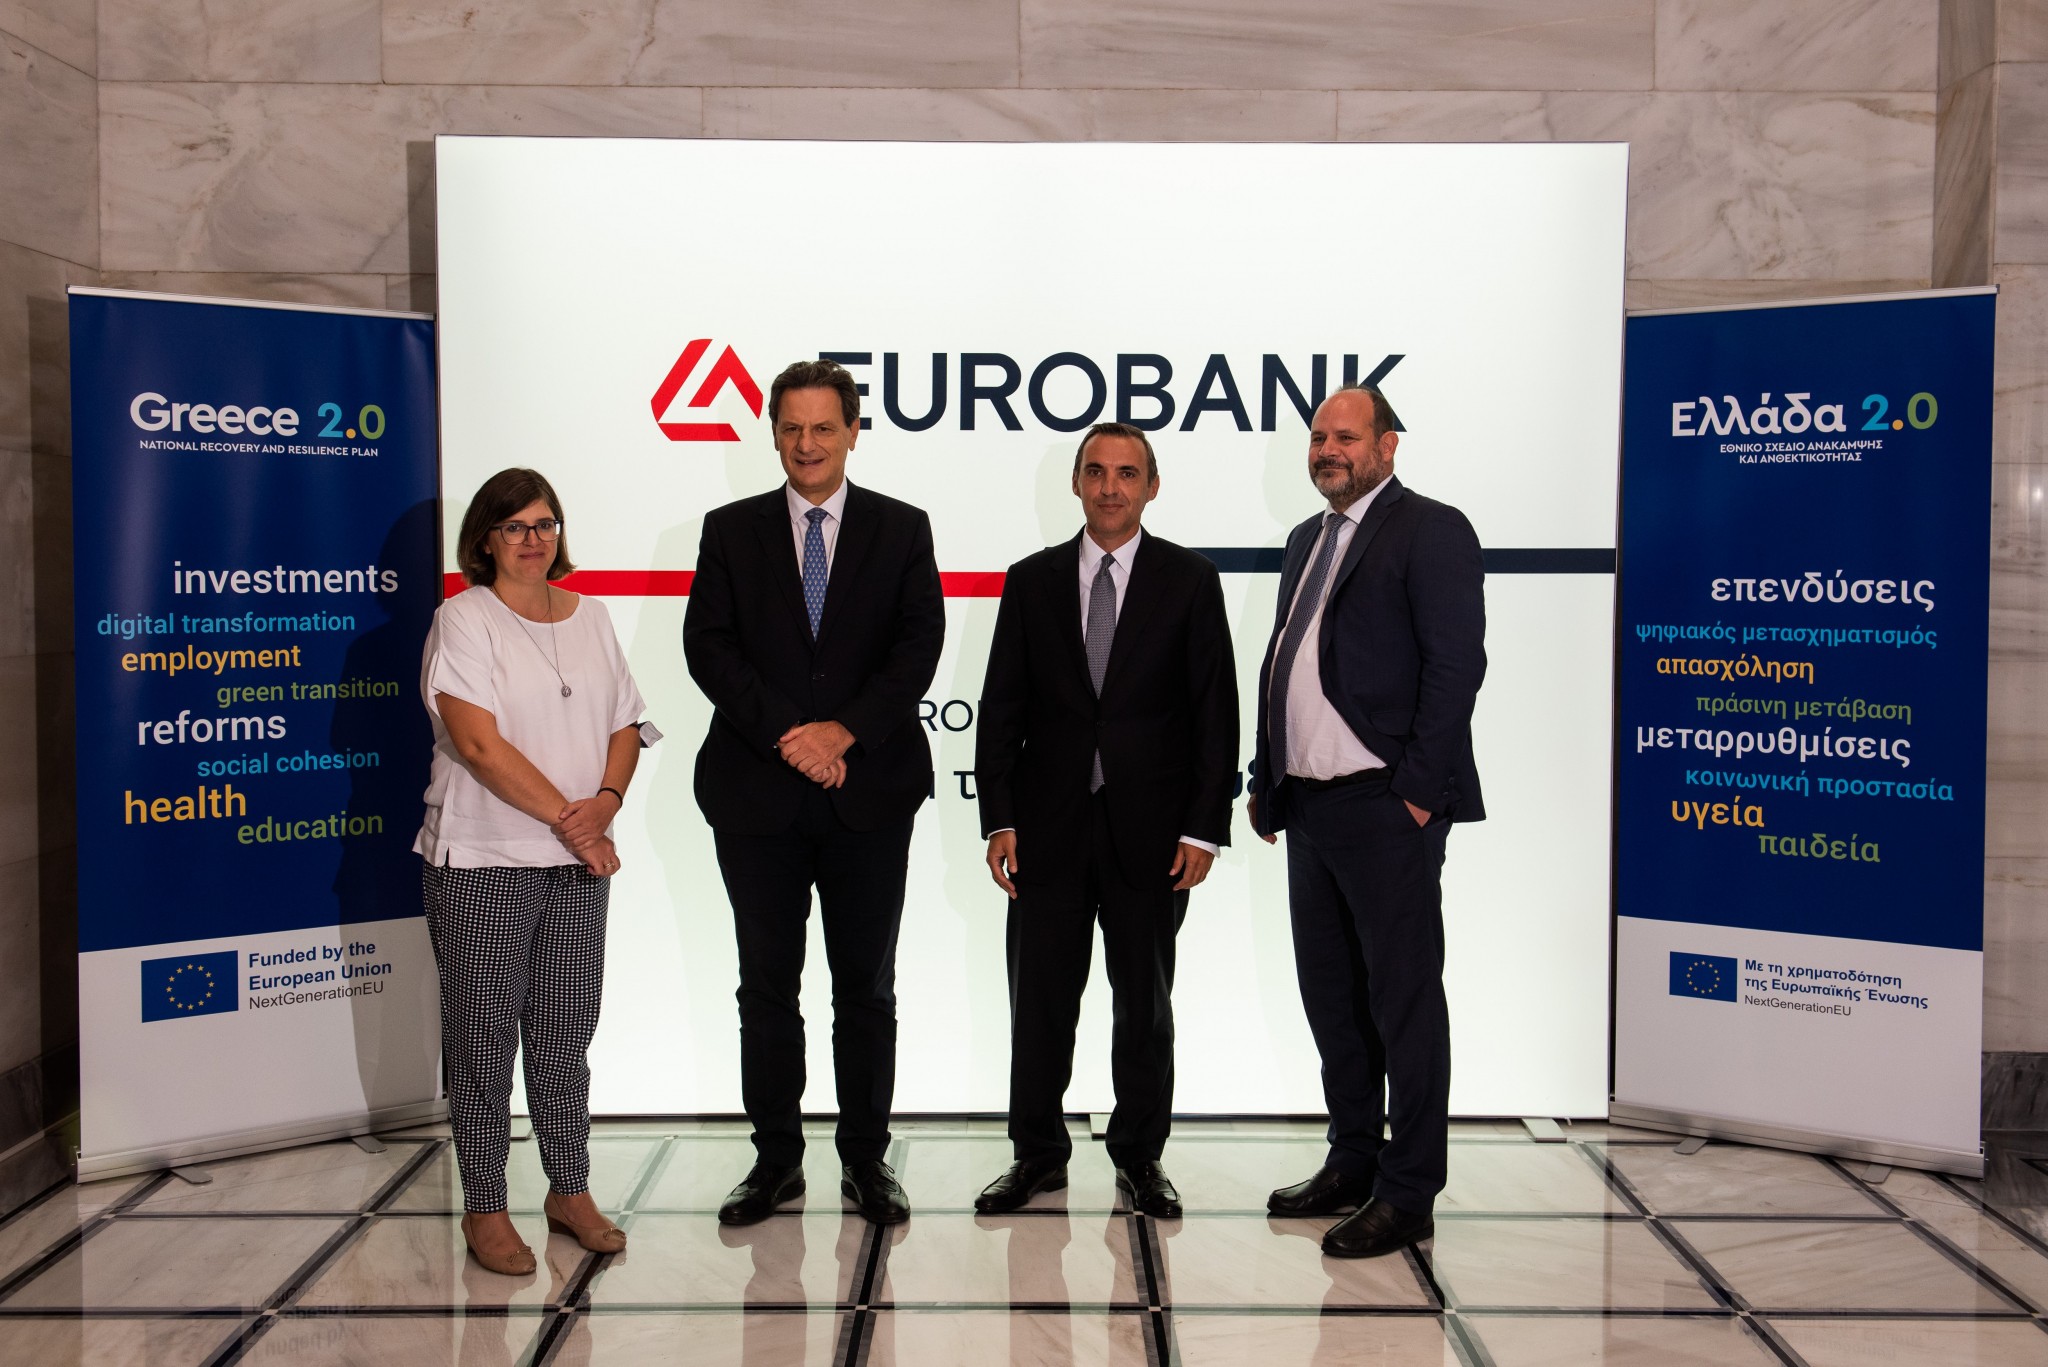 Eurobank: Εγκρίθηκε η αίτηση εκταμίευσης για τη 2η δόση ύψους €200 εκατ. του Ταμείου Ανάκαμψης & Ανθεκτικότητας